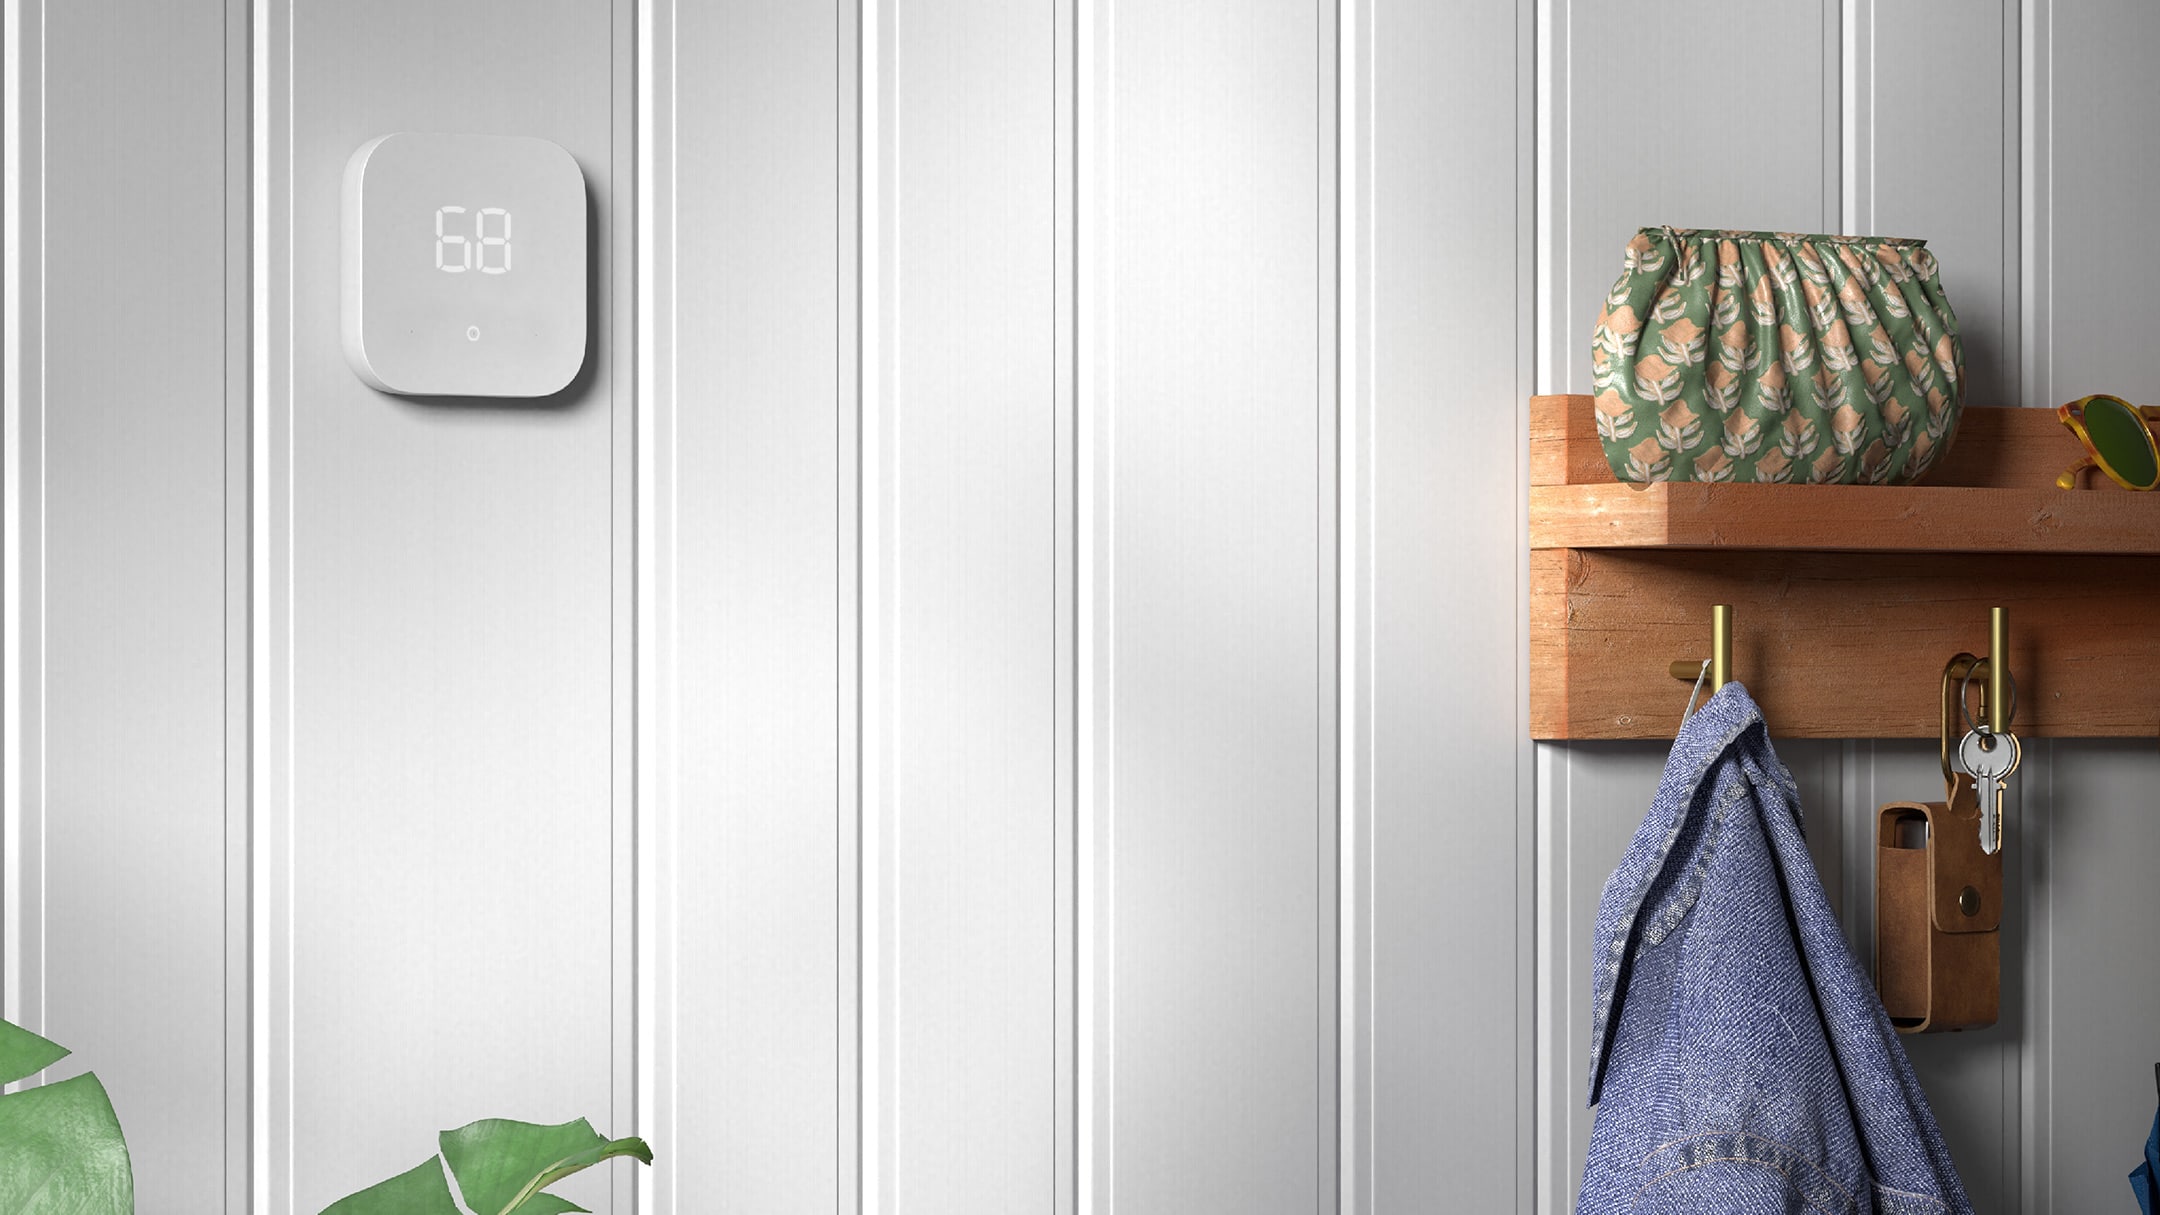 Alexa Smart Home Gerät an weißer Wohnwand